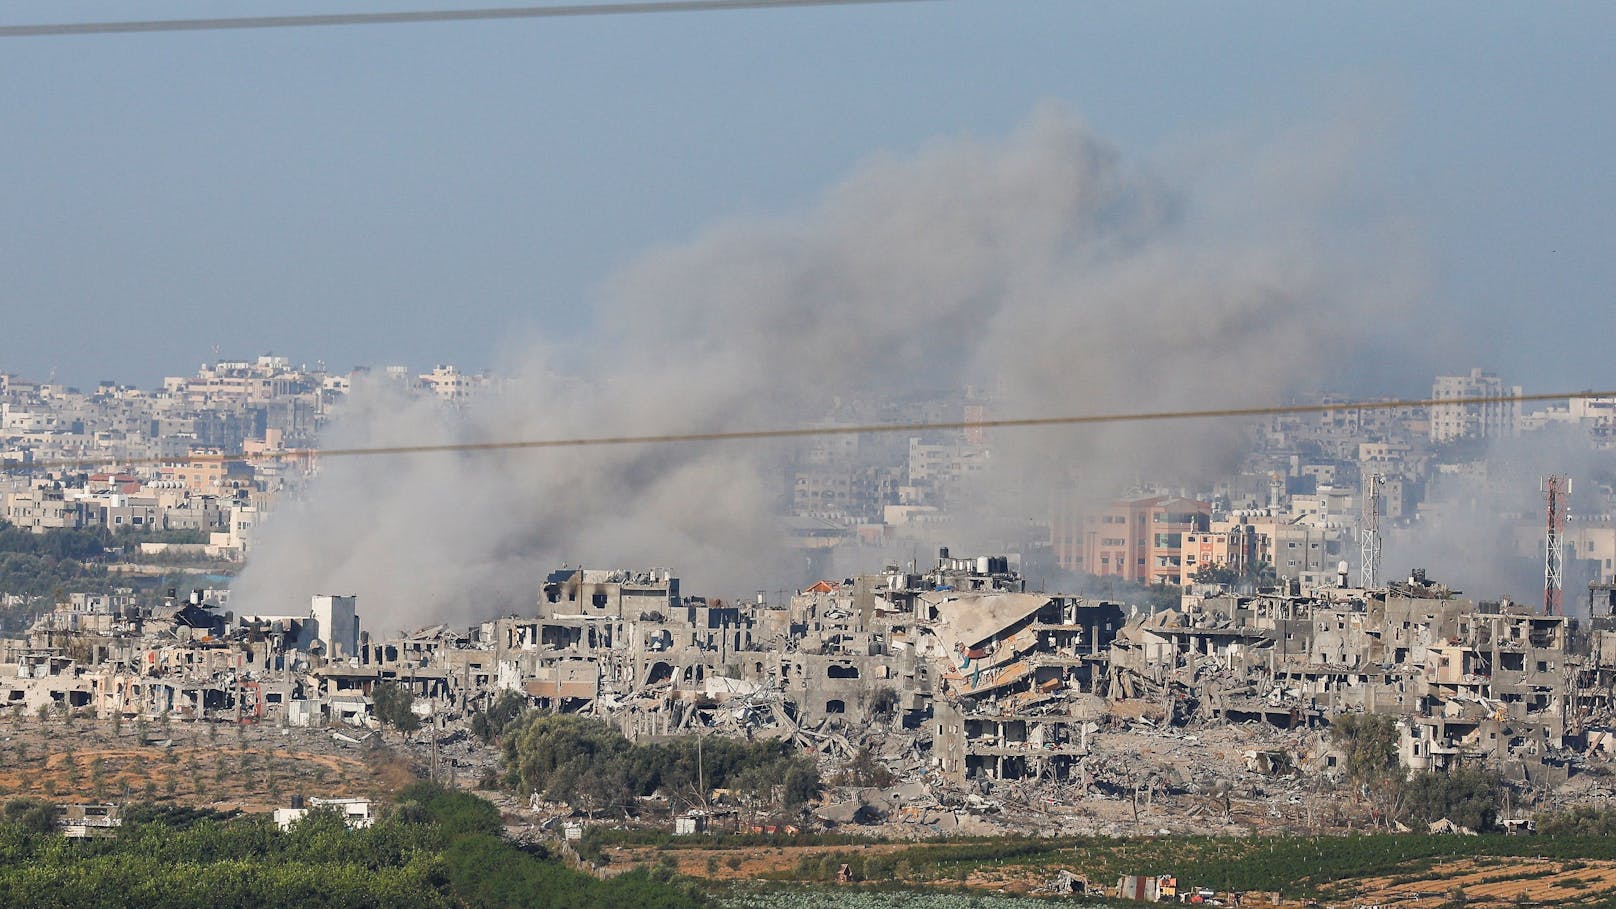 Gefechte, Explosionen: Reporter über schlimme Gaza-Lage